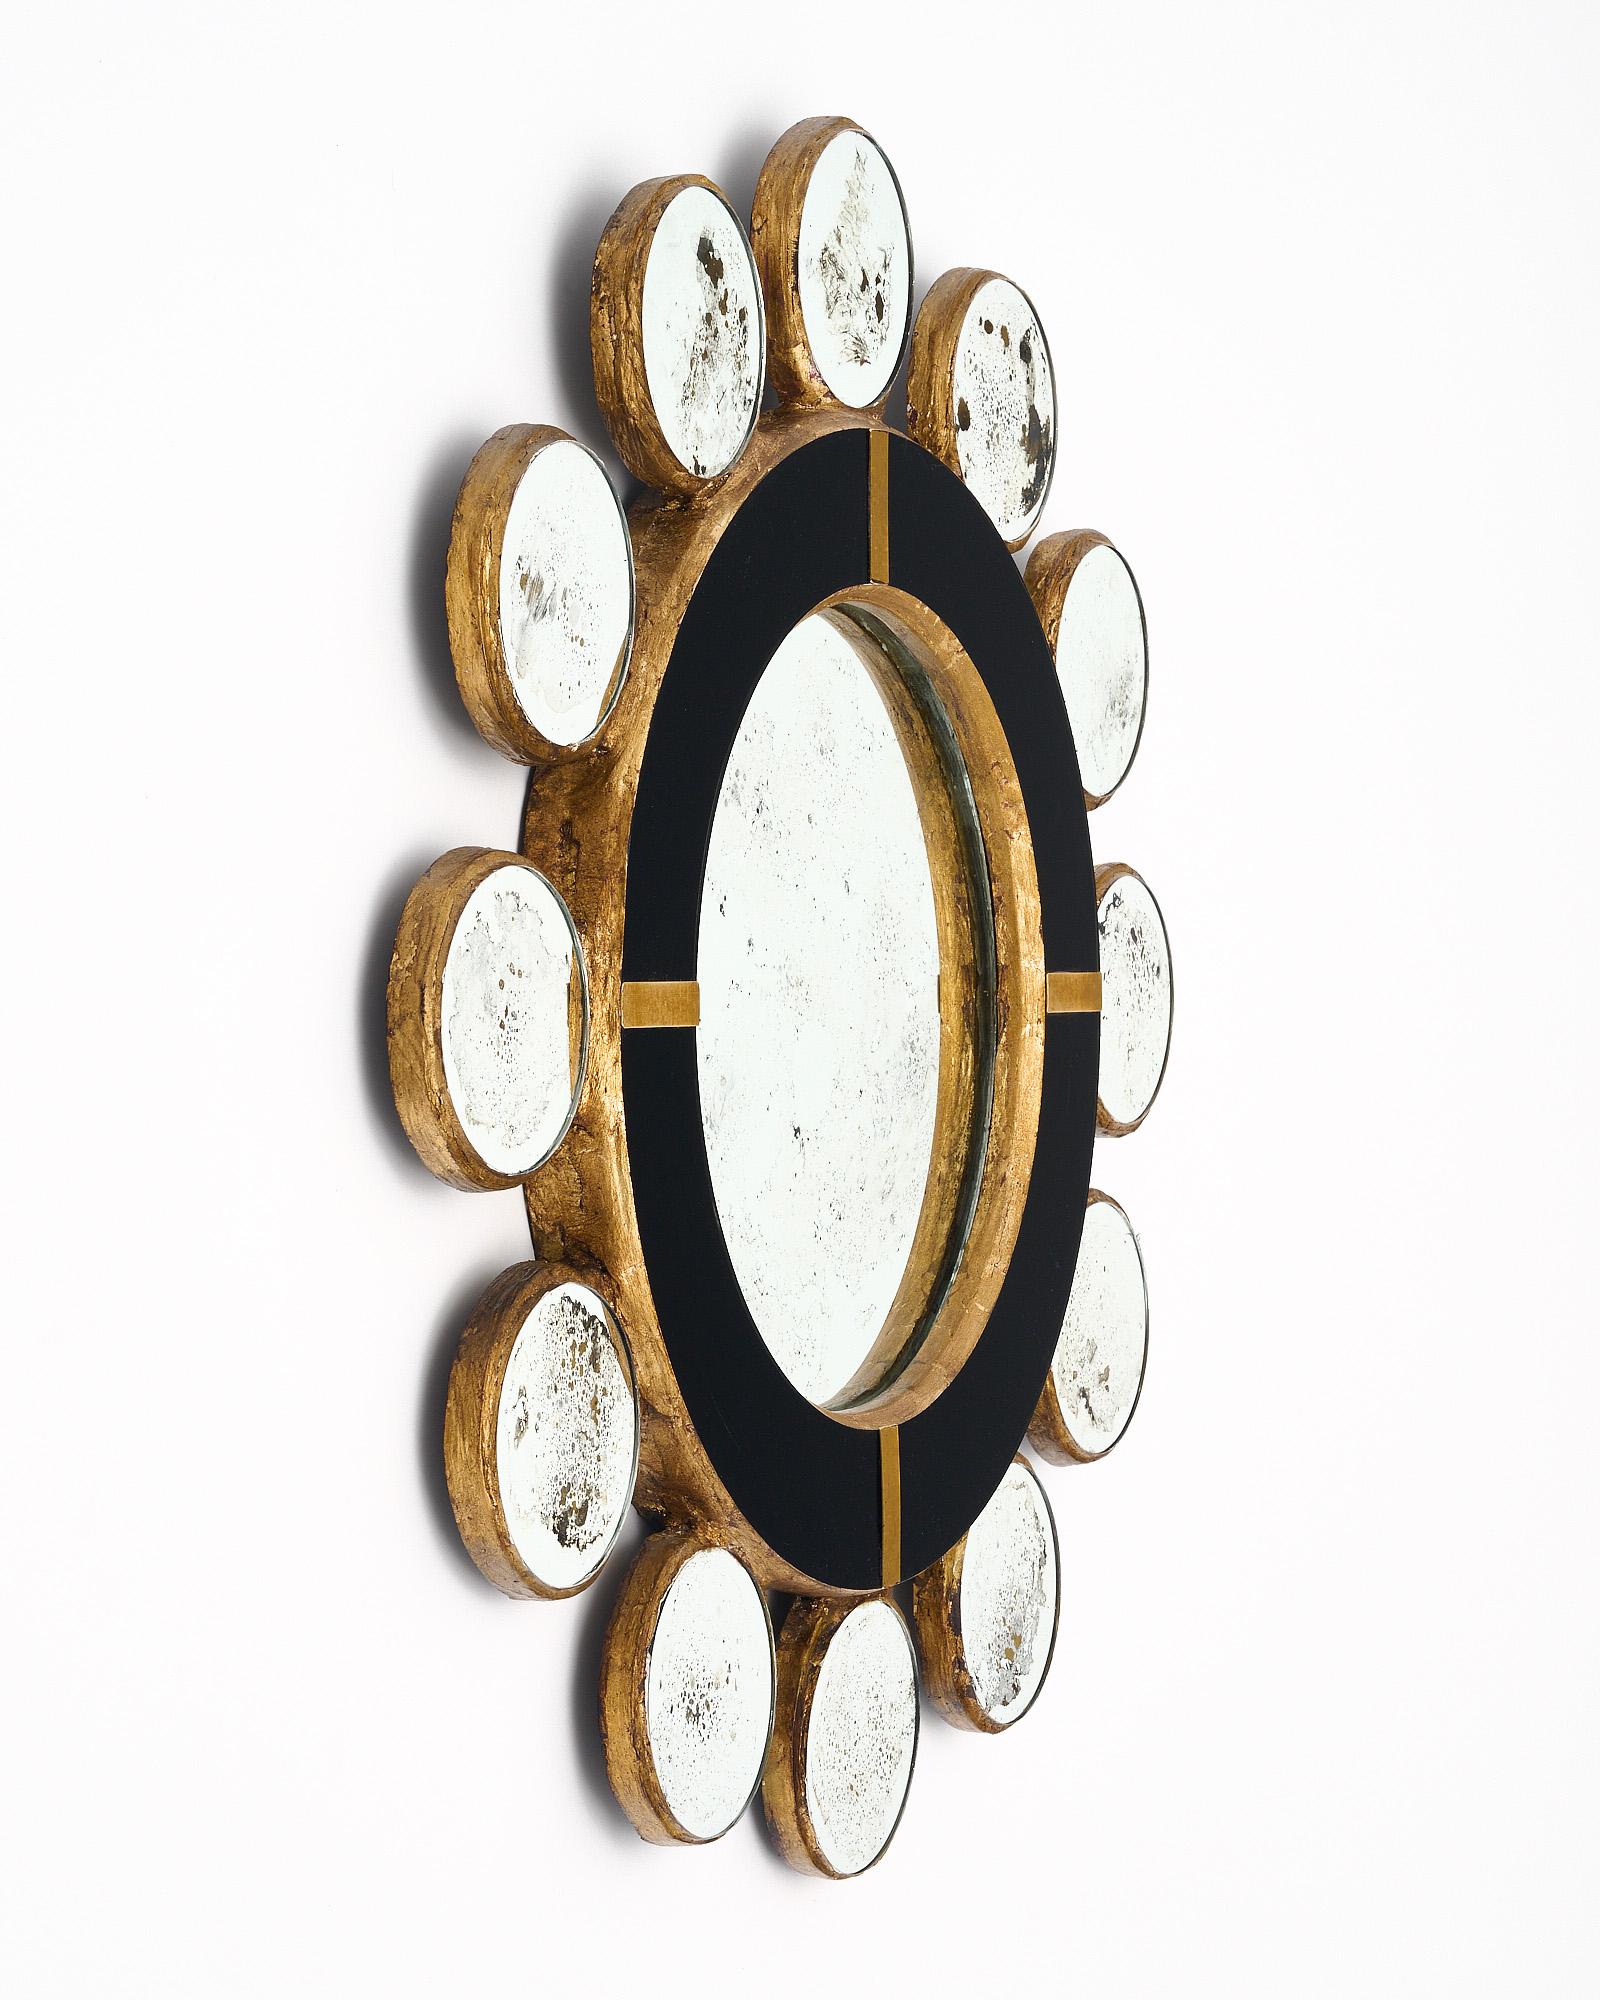 Spiegel aus Spanien mit einem Rahmen aus vergoldetem Holz, der mit schwarzem Opalglas verblendet ist. Der zentrale Spiegel ist von eglomisierten sphärischen Spiegeln umgeben. Akzente aus Messing.